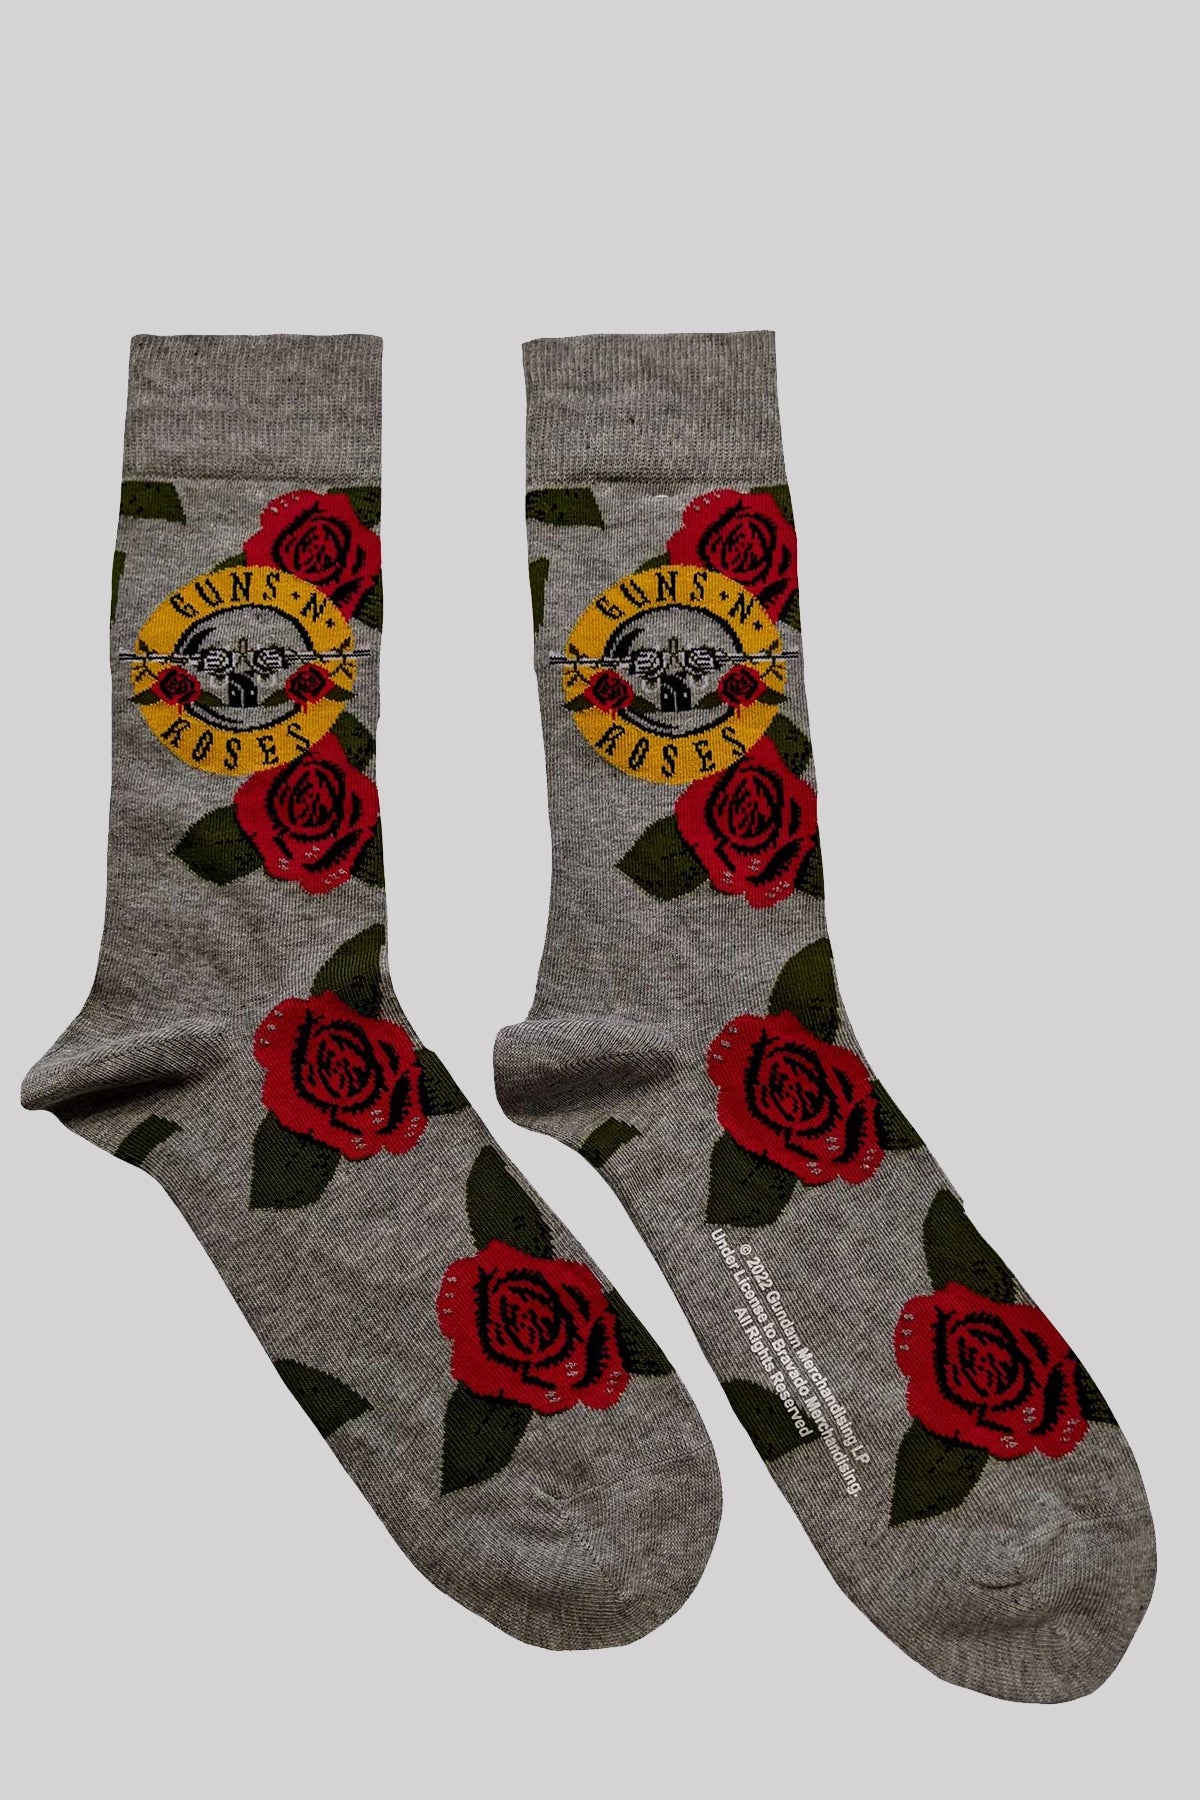 Official Band Merch Guns N' Roses Unisex Ankle Socks: Bullet Roses